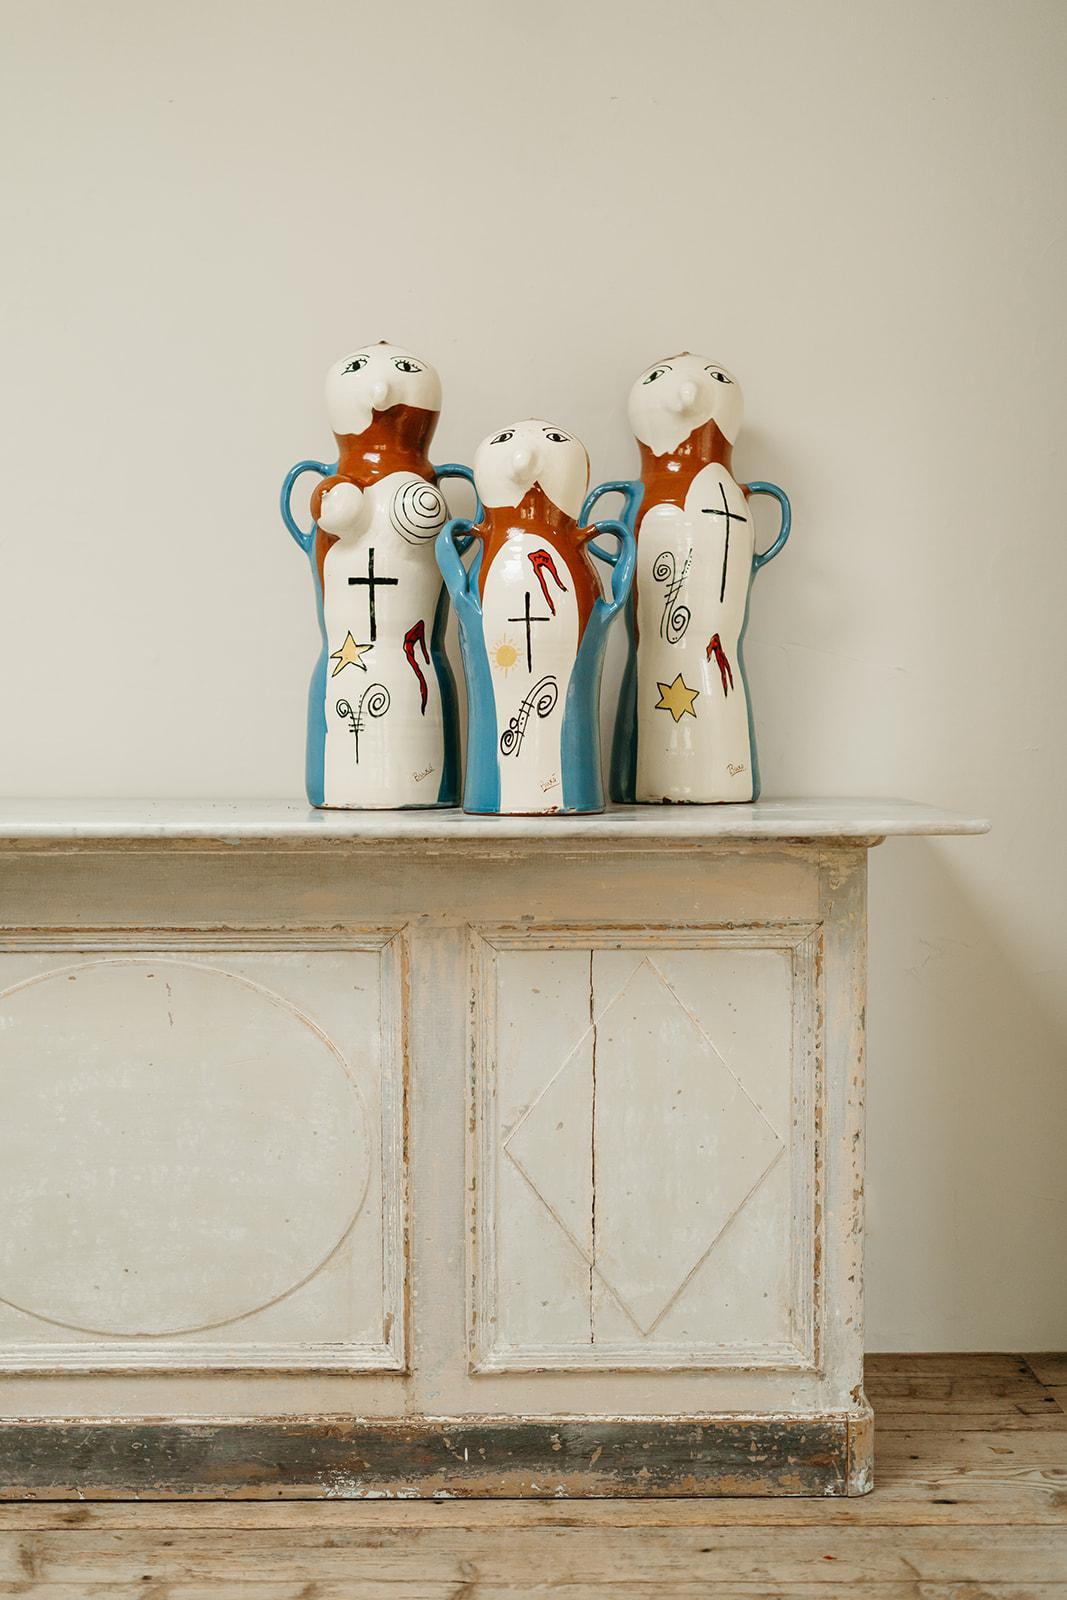 Die Familie! Selten findet man diese 3 Buxo Vasen zusammen. 
dekorative Spaßobjekte, die Ihnen ein Lächeln ins Gesicht zaubern werden.
mama 67 cm hoch x 30 cm breit und 28 cm tief
papa 67 cm hoch x 32 cm breit und 23 cm tief 
Baby 54 cm hoch x 28 cm